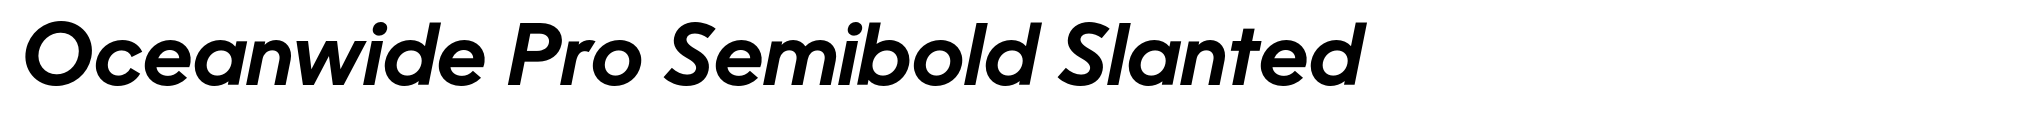 Oceanwide Pro Semibold Slanted image